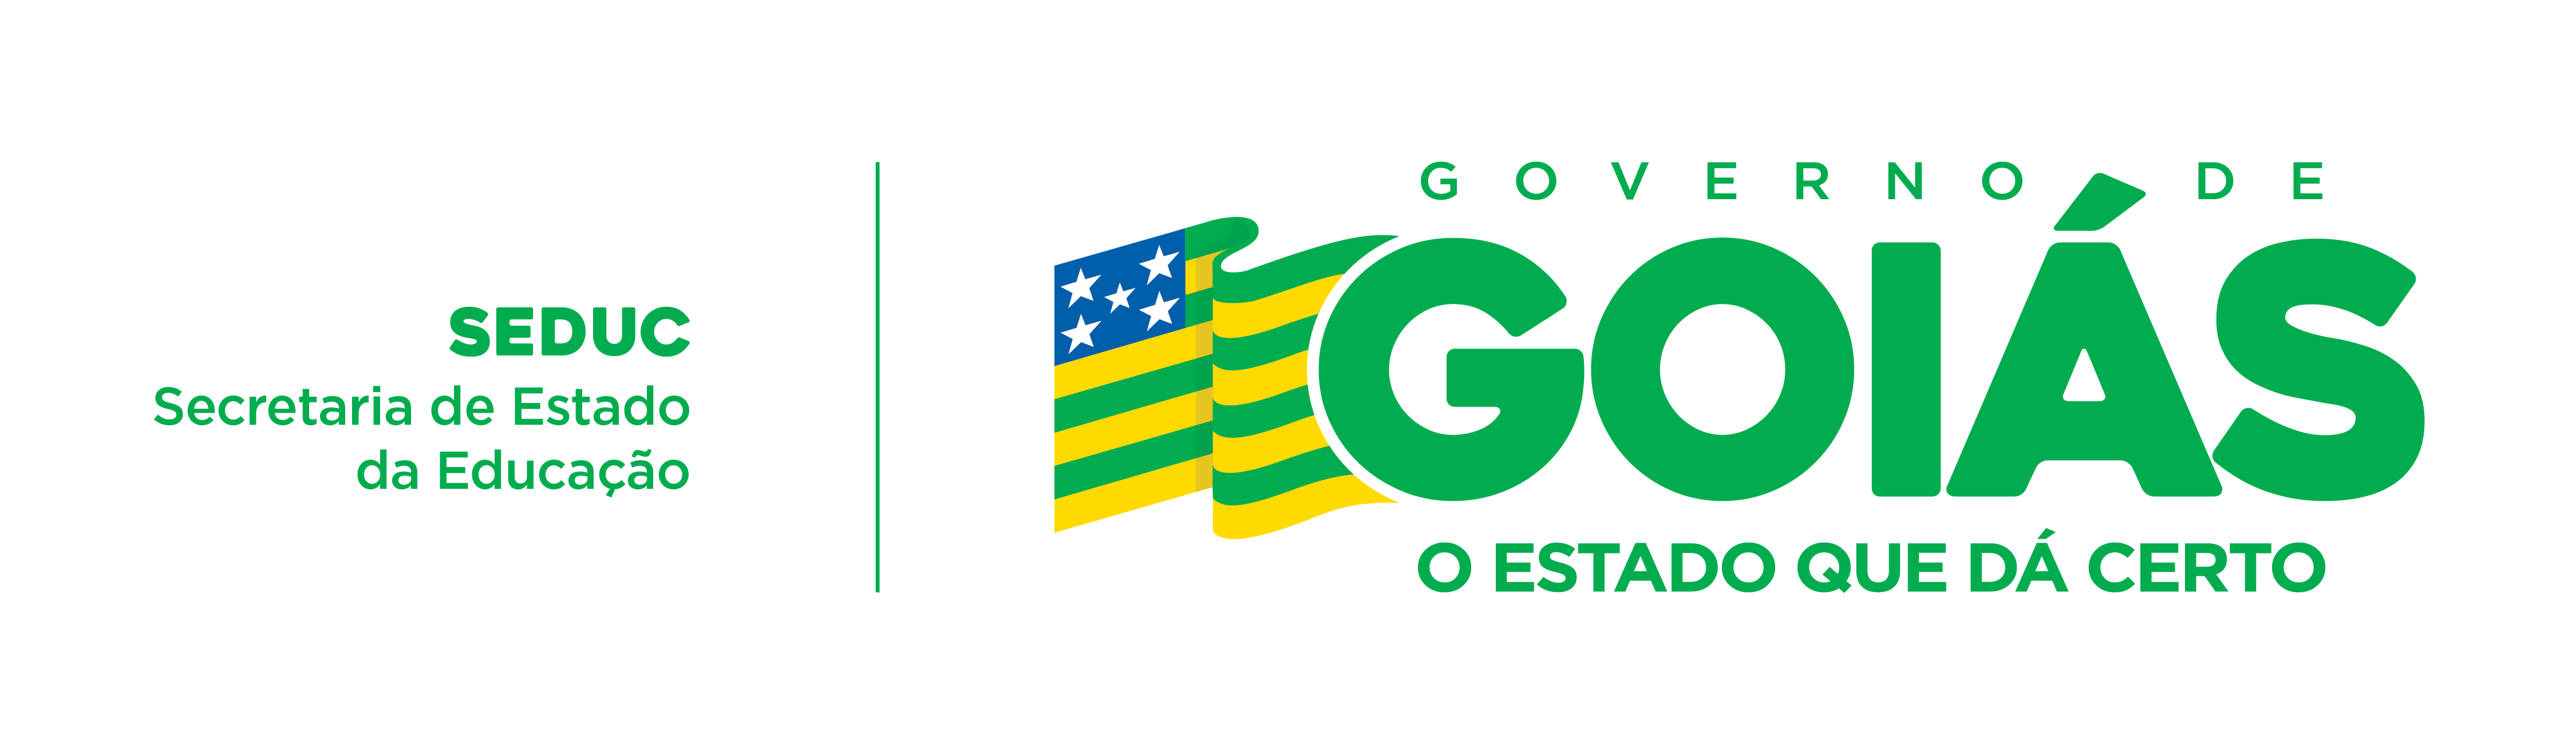 Governo de Goiás - Secretaria de Educação Cultura e Esporte